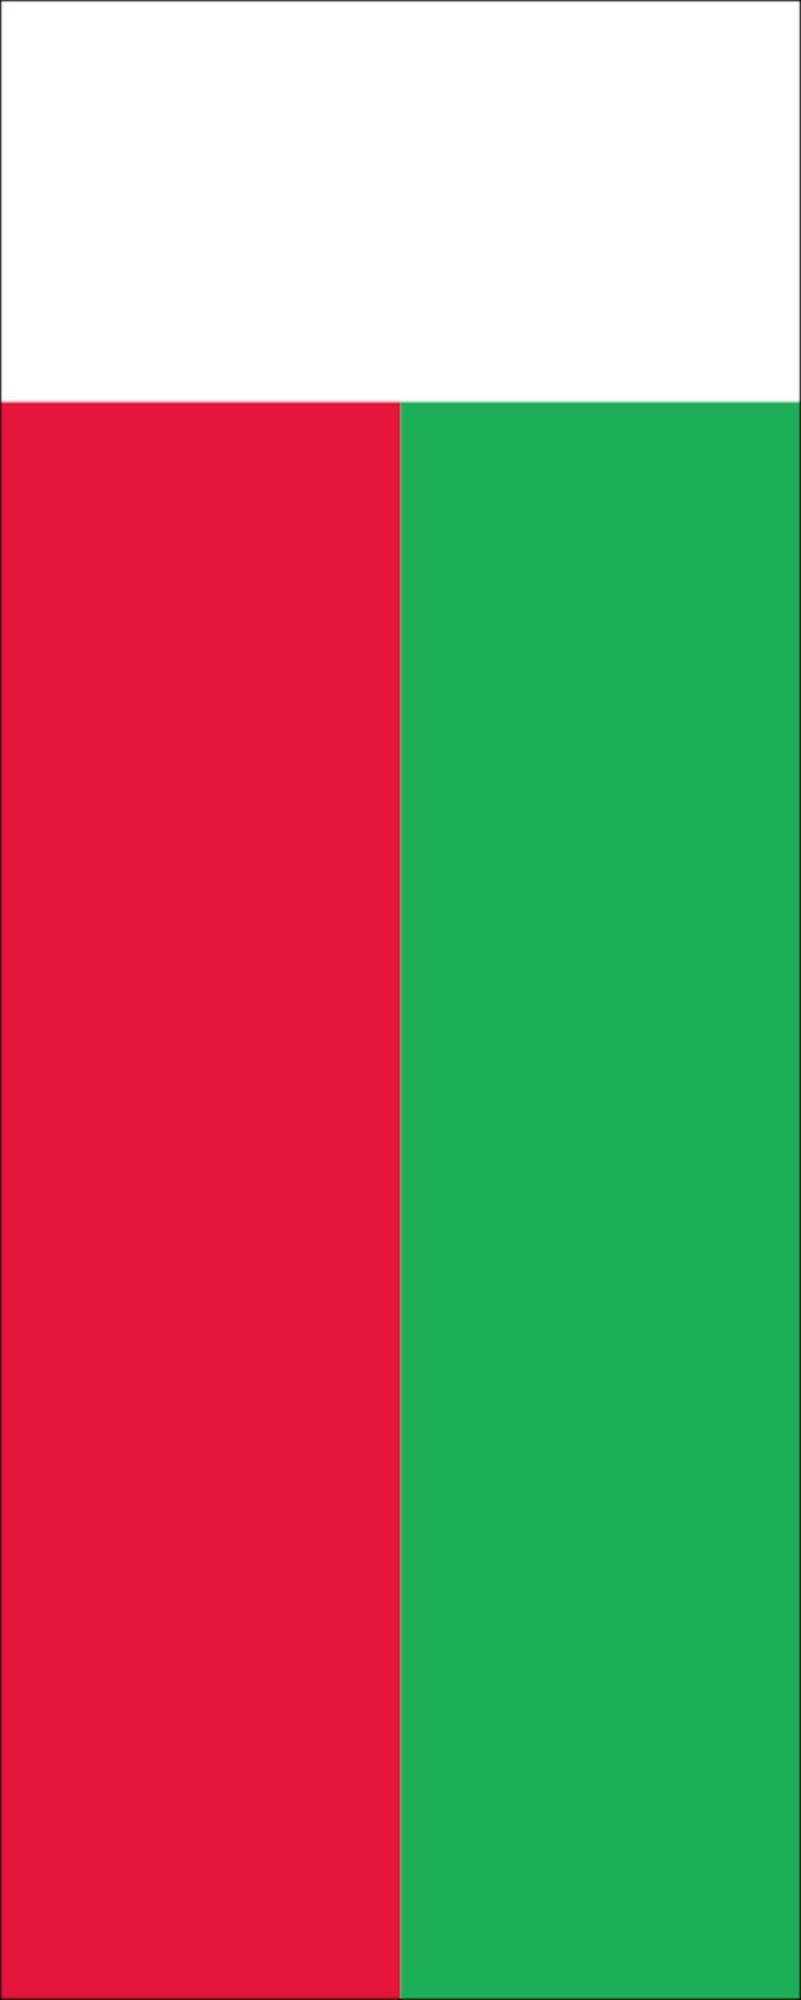 160 Madagaskar flaggenmeer g/m² Flagge Hochformat